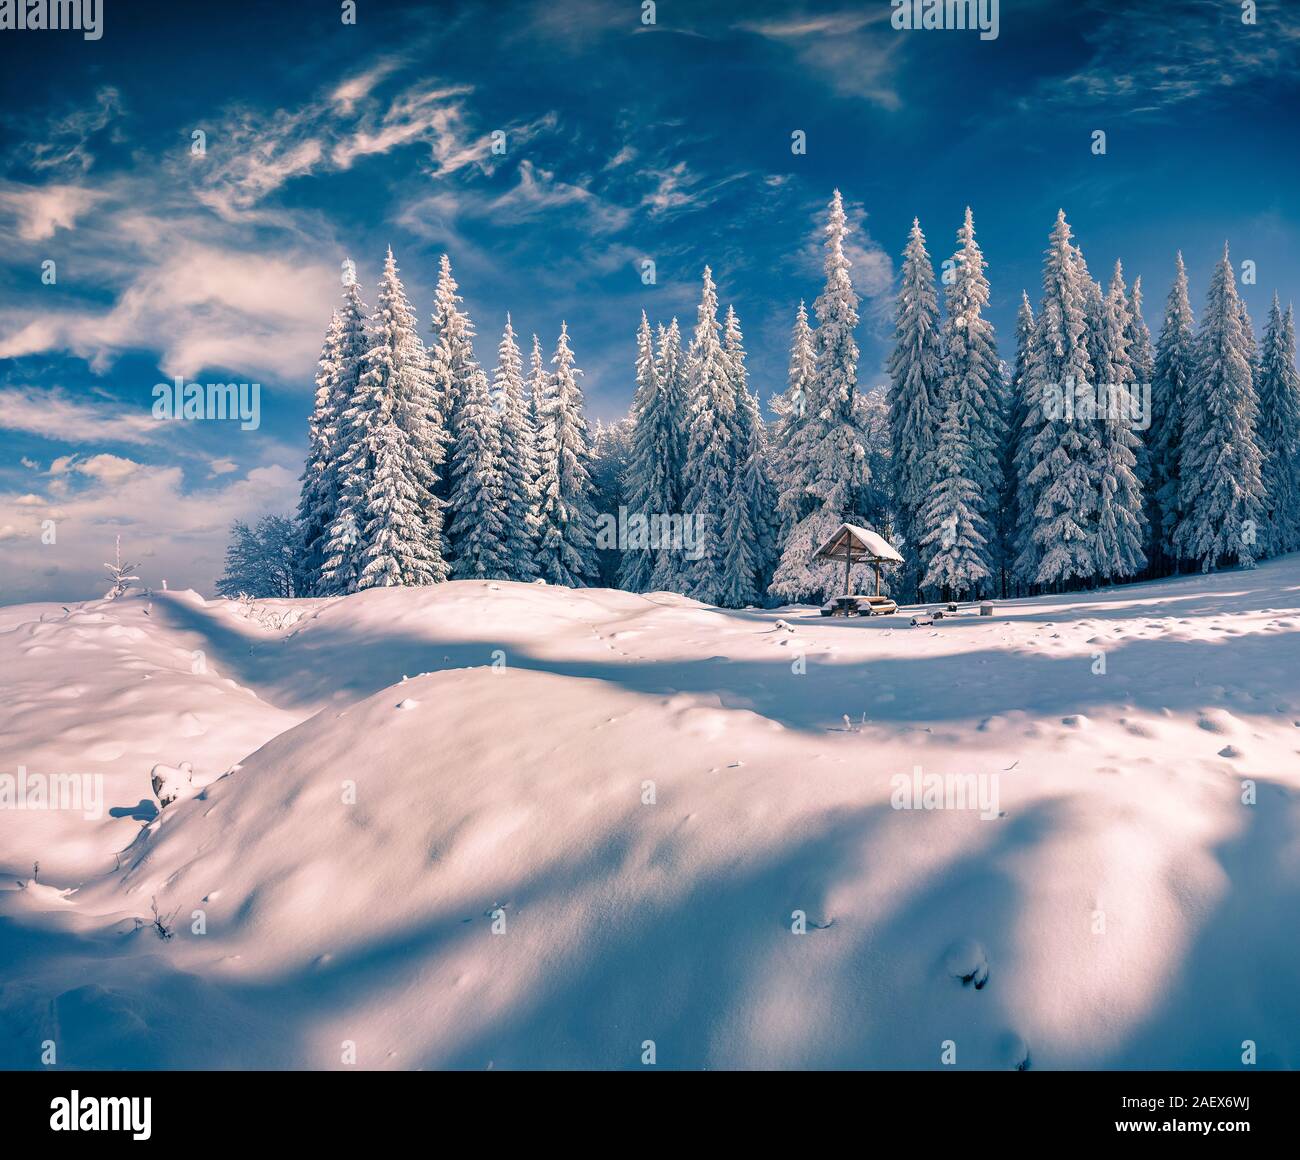 Scène d'hiver ensoleillée dans la forêt de la montagne après une snovfall. Région des Carpates, l'Ukraine, Europy. Banque D'Images